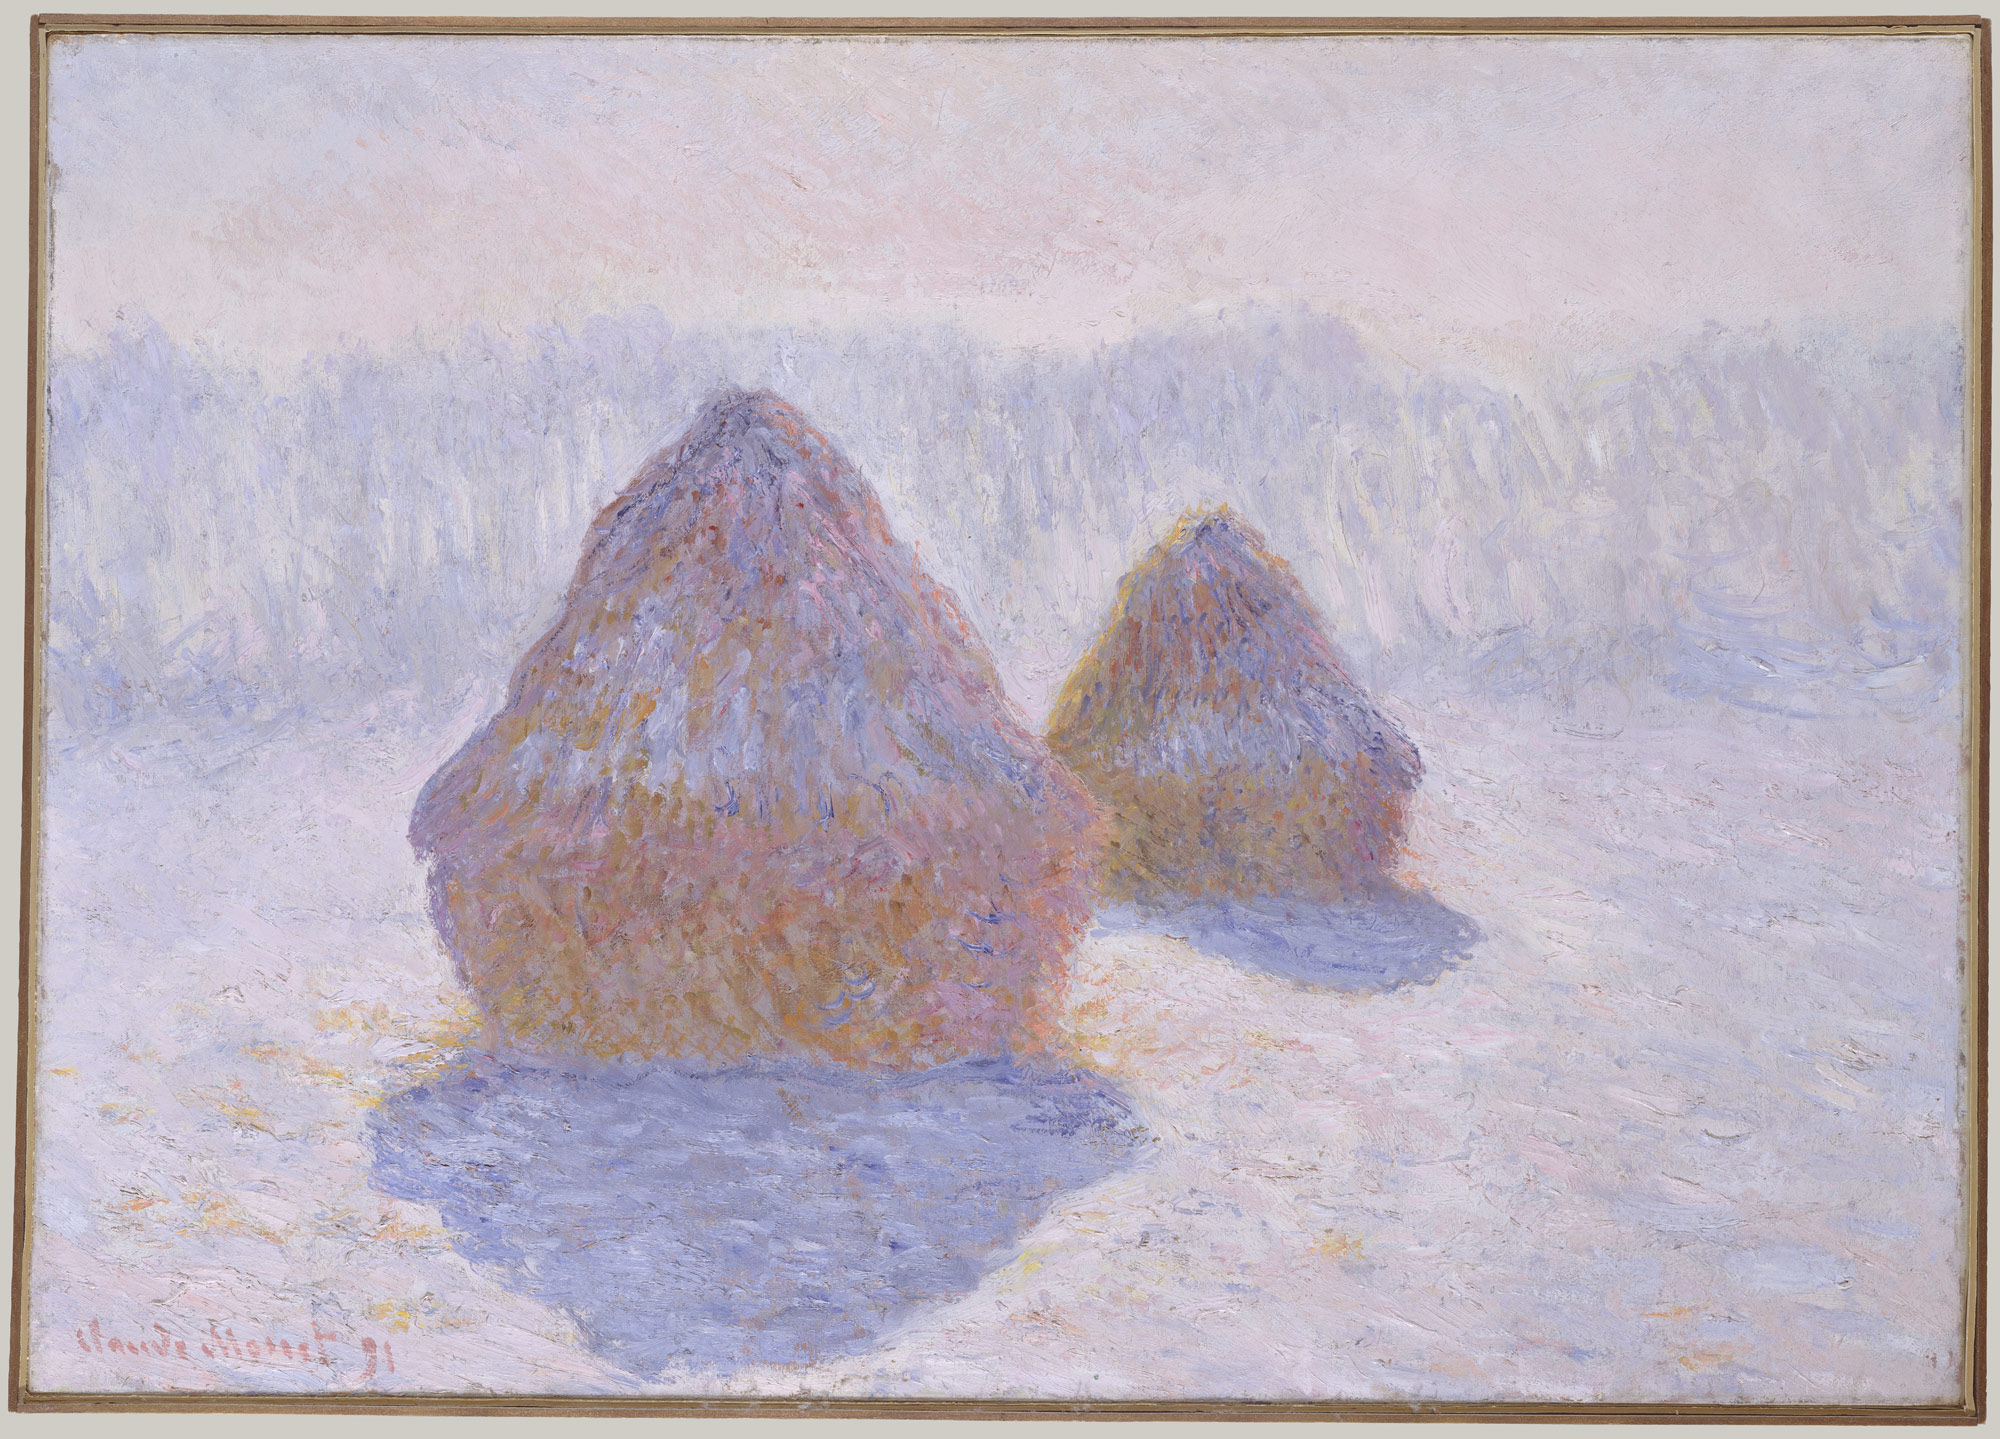 Meules de foin (Effet de neige, soleil) by Claude Monet - 1891 - 65.4 x 92.1 cm Metropolitan Museum of Art